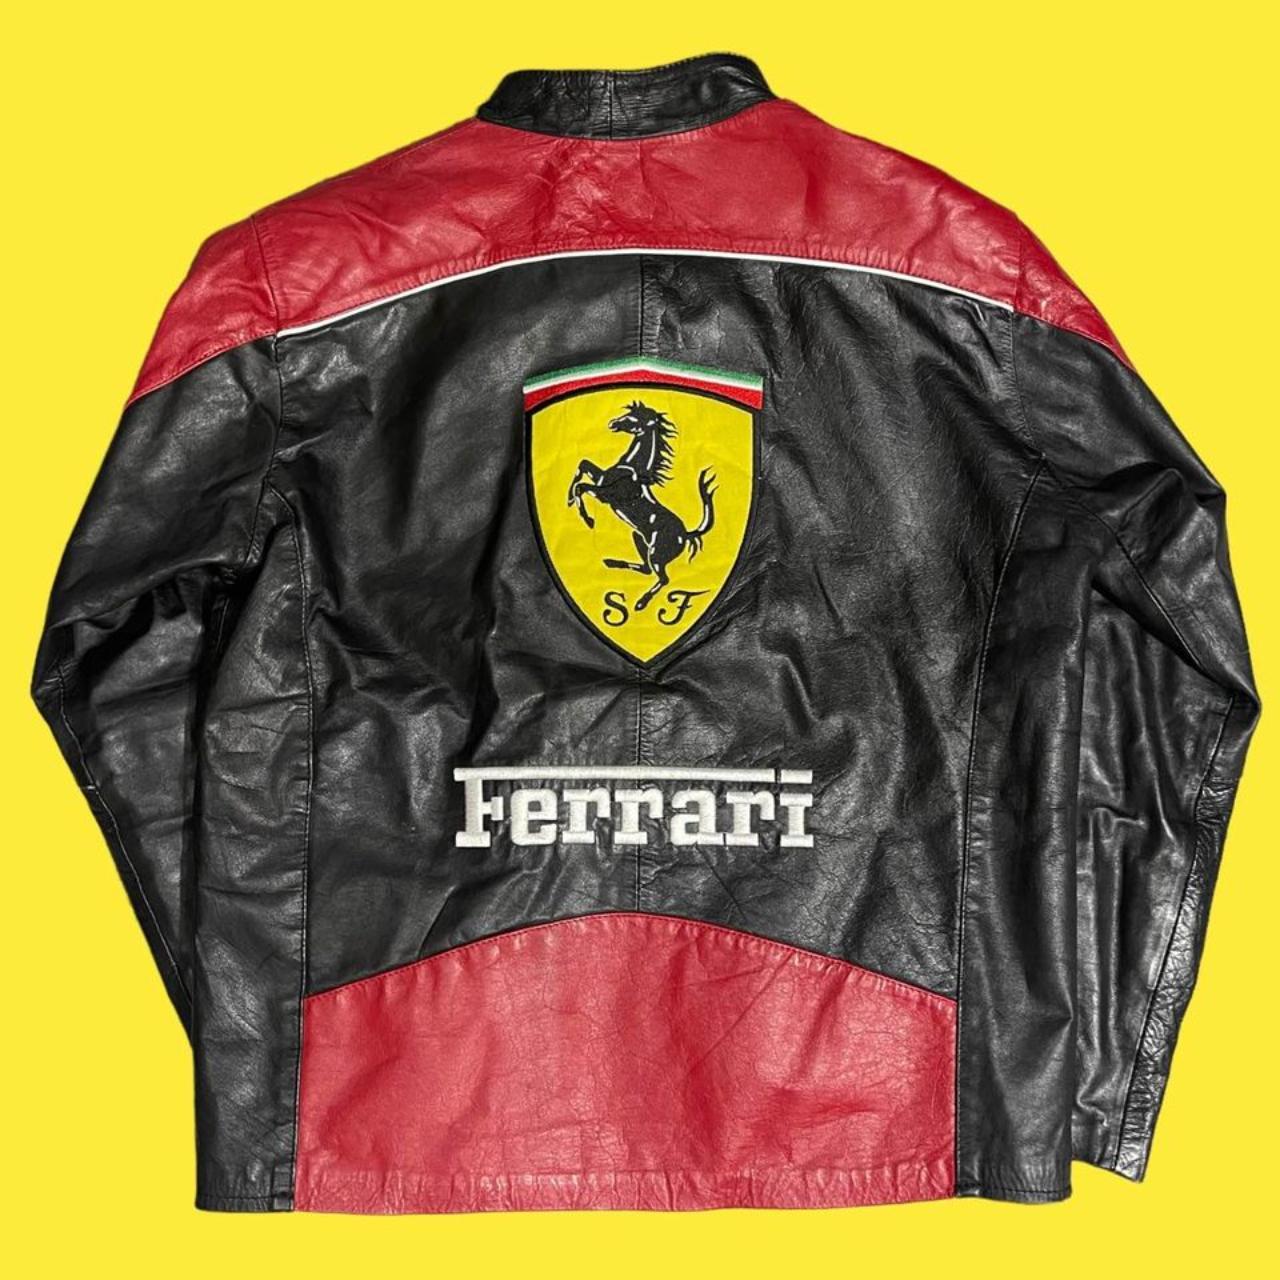 Vintage medium mens leather Ferrari jacket genuine... - Depop